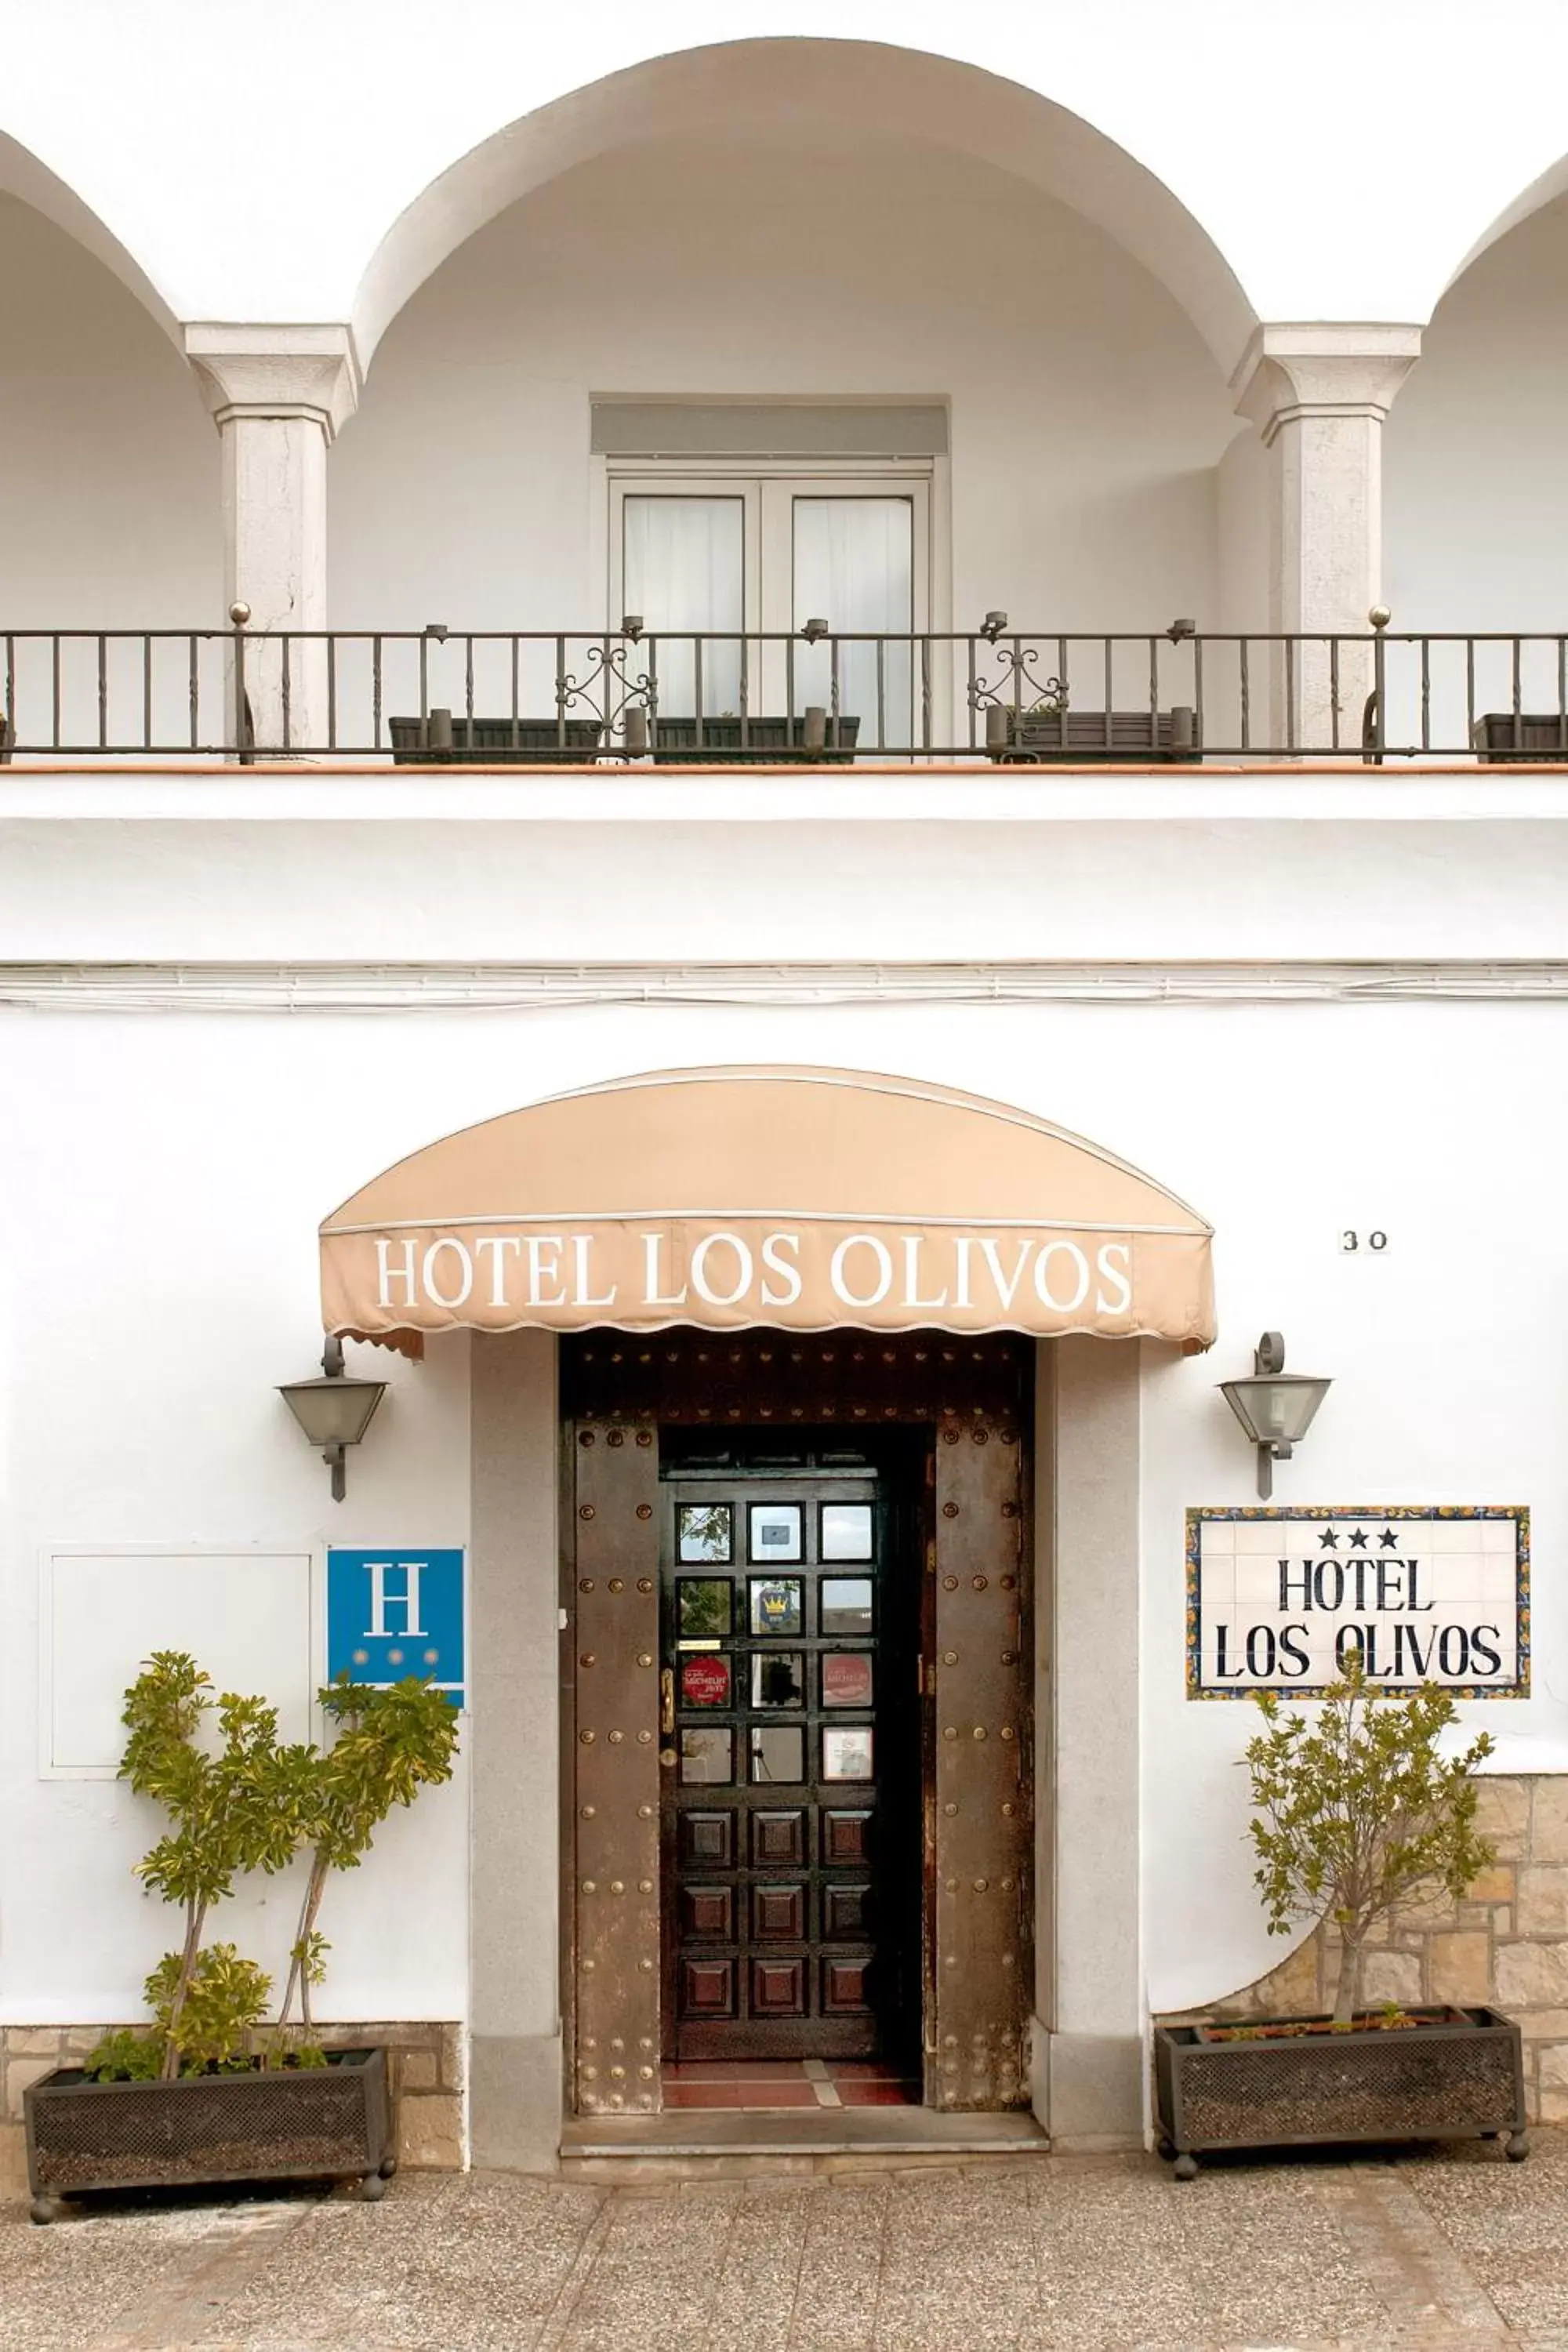 Facade/entrance in Hotel Los Olivos